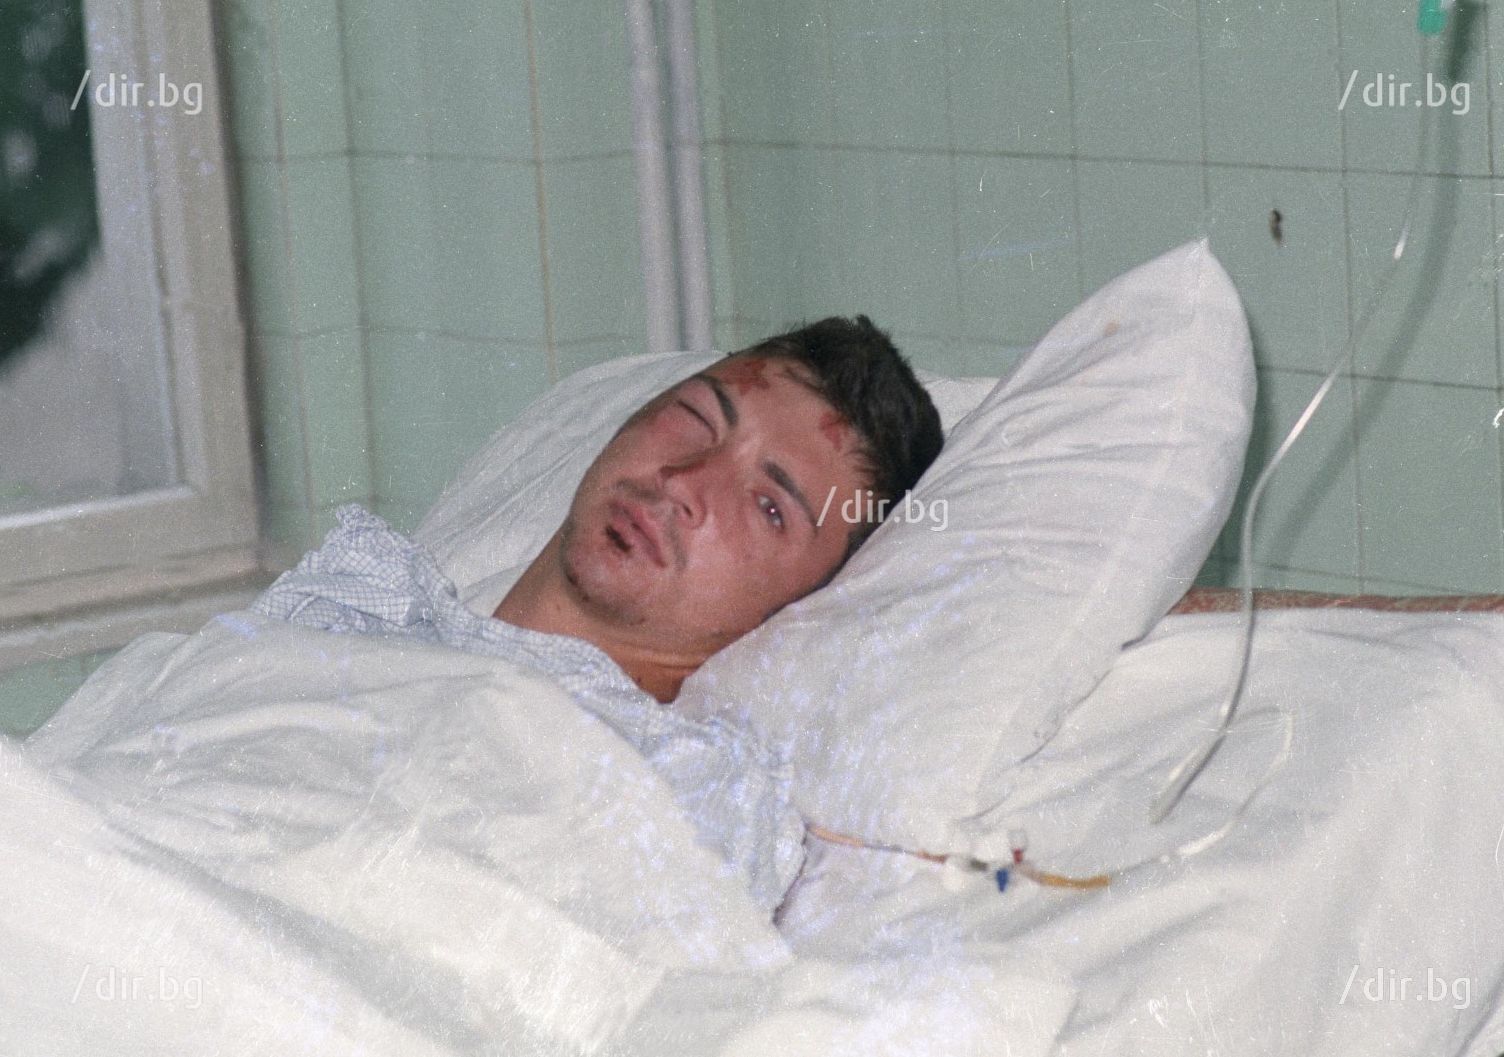 Оцелелият редник Кръстьо Дунчев е настанен в "Пирогов" с тежка черепно-мозъчна травма и прекарва няколко дни в кома.